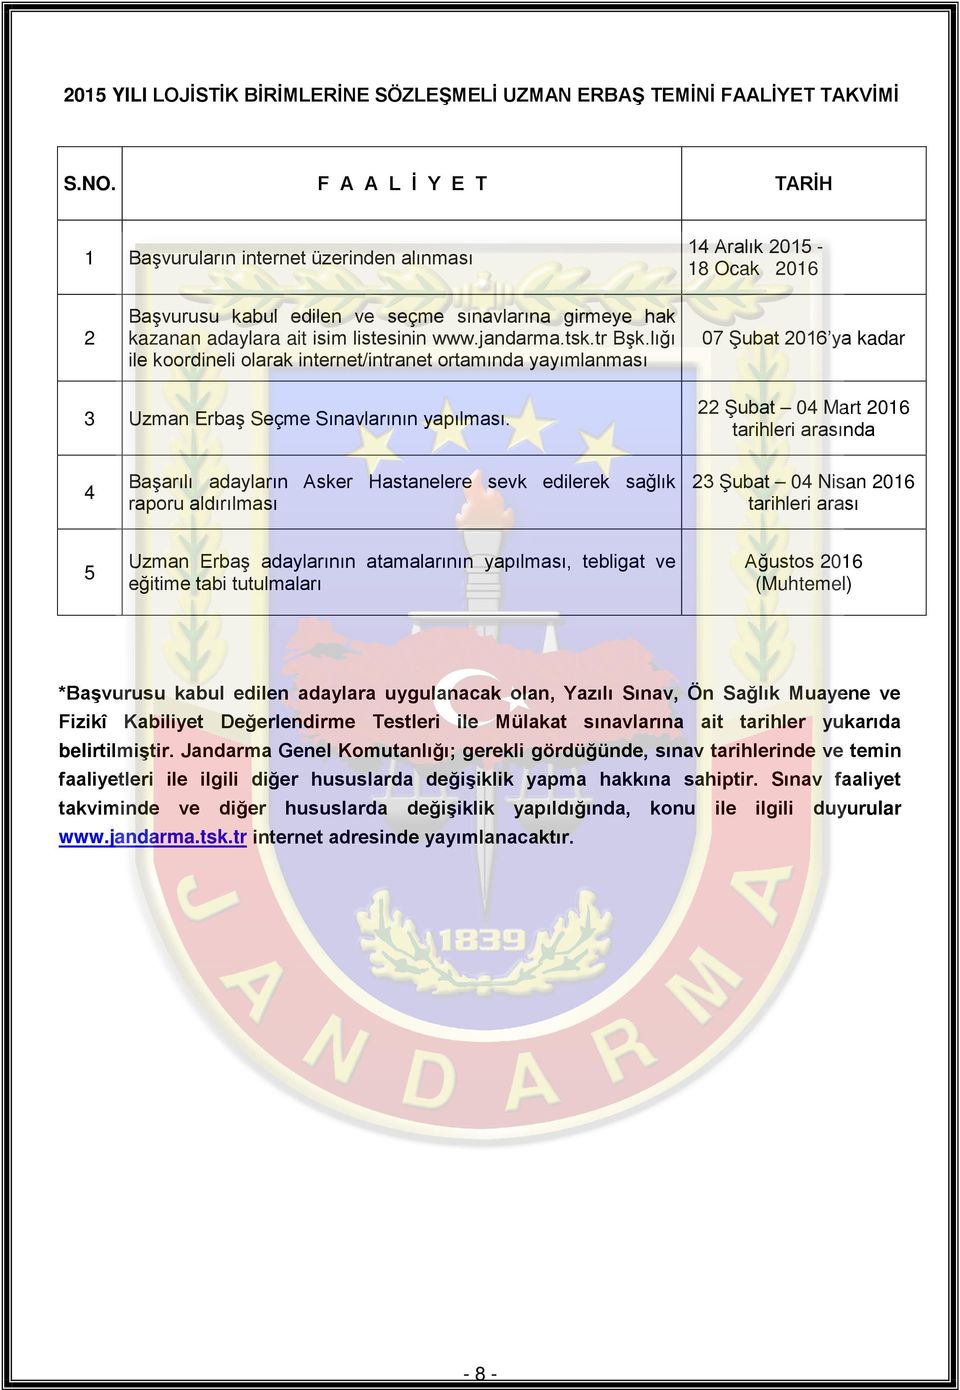 jandarma.tsk.tr Bşk.lığı ile koordineli olarak internet/intranet ortamında yayımlanması 07 Şubat 2016 ya kadar 3 Uzman Erbaş Seçme Sınavlarının yapılması.